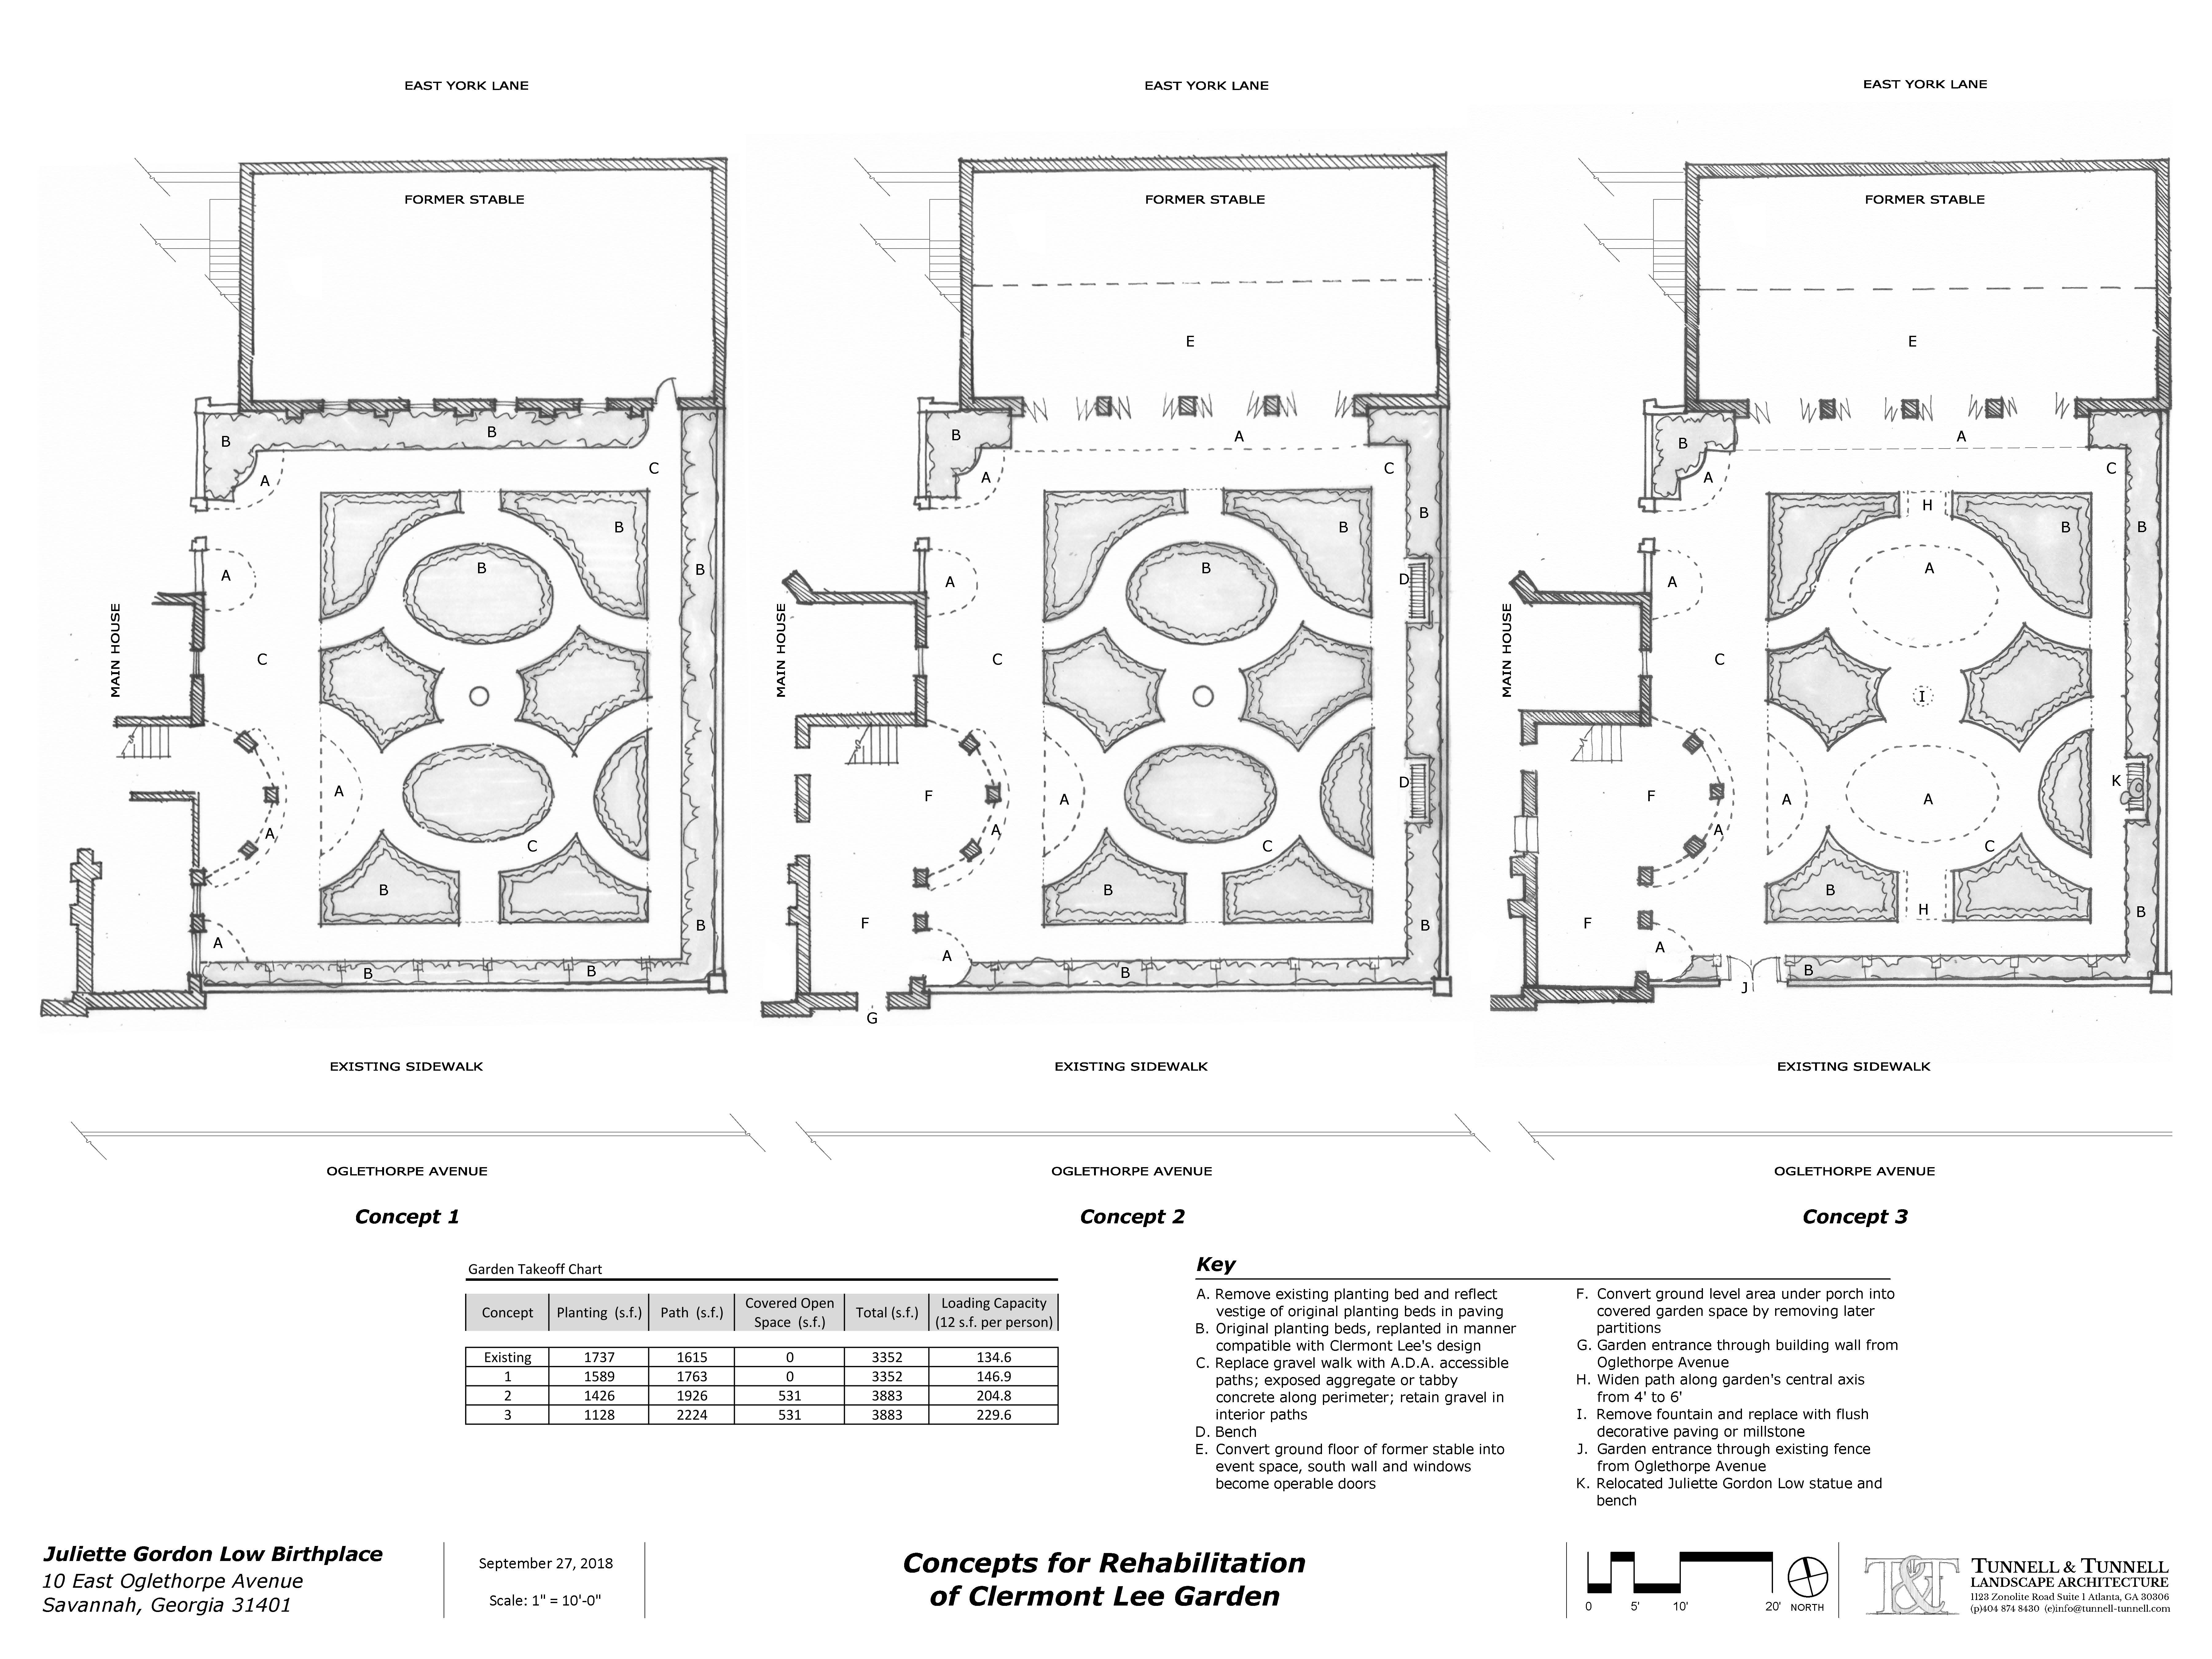 JGL Birthplace-Clermont Lee Garden Rehabilitation Design Concepts